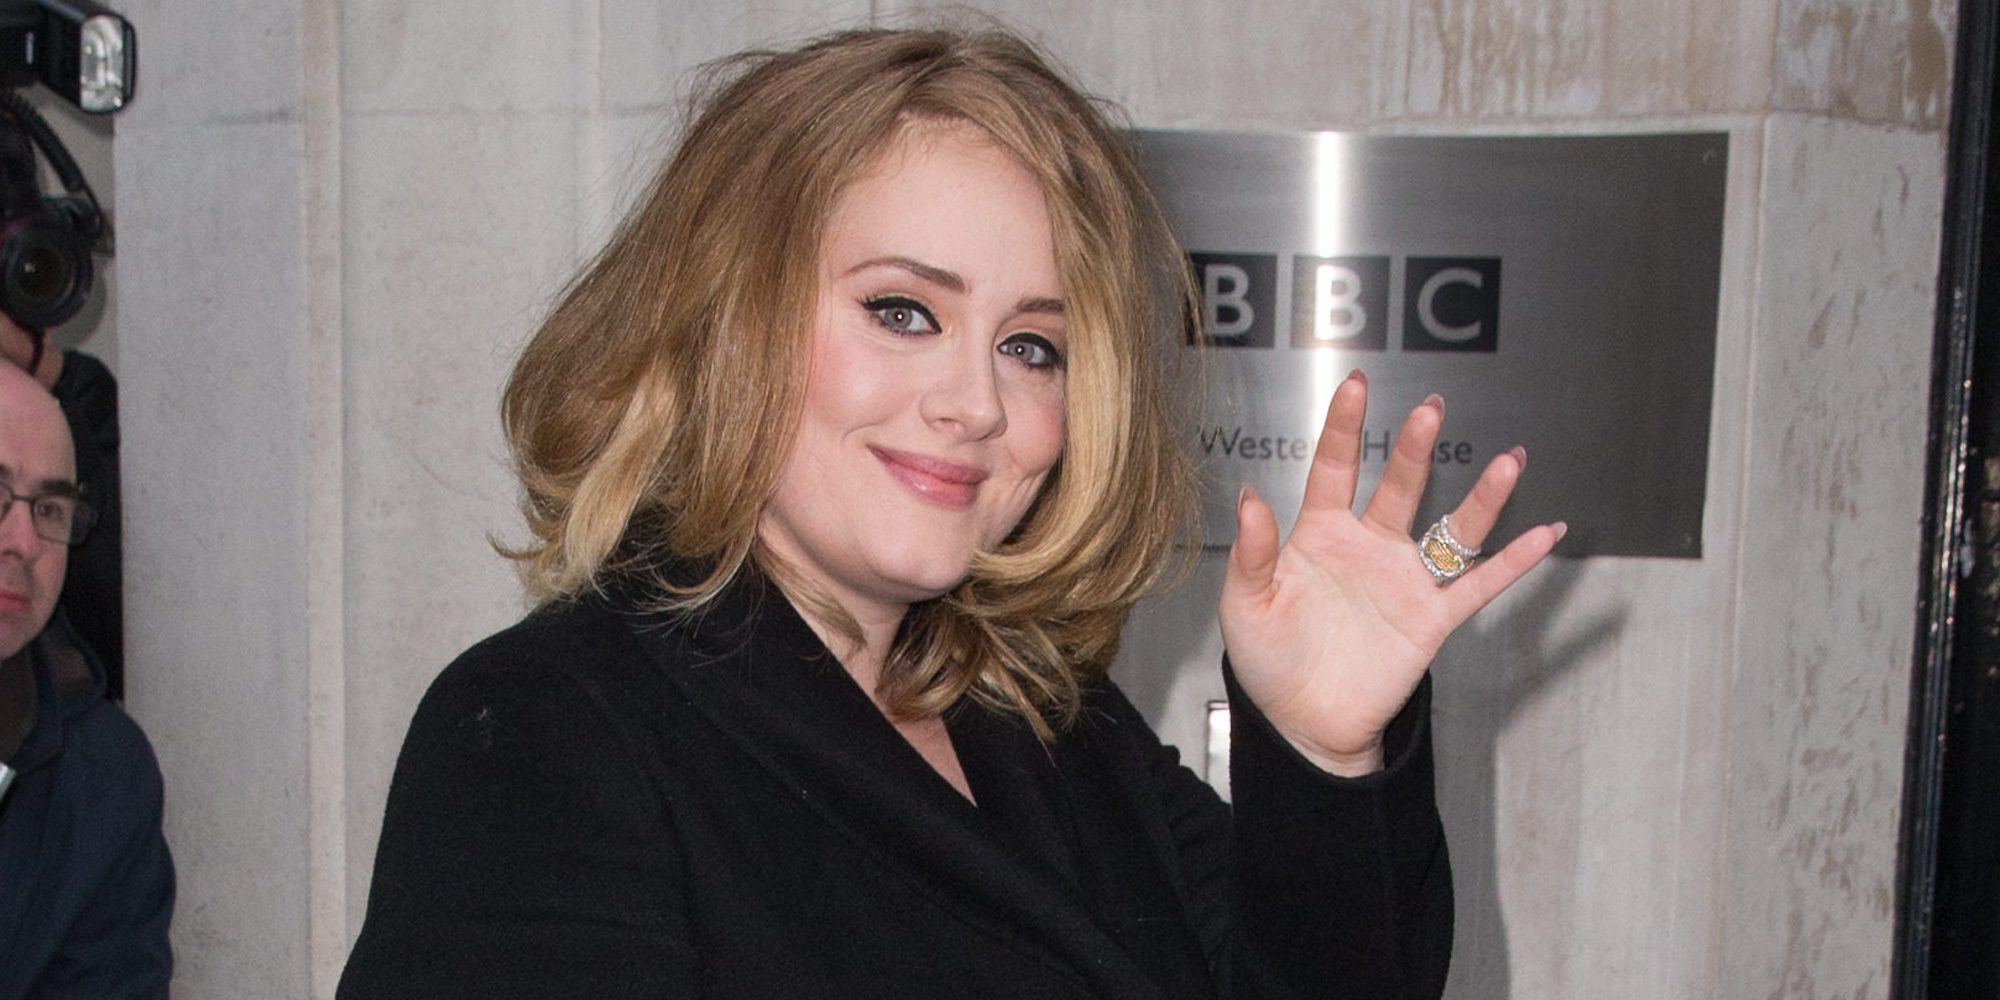 La organización de la Super Bowl niega haber ofrecido a Adele actuar en 2017